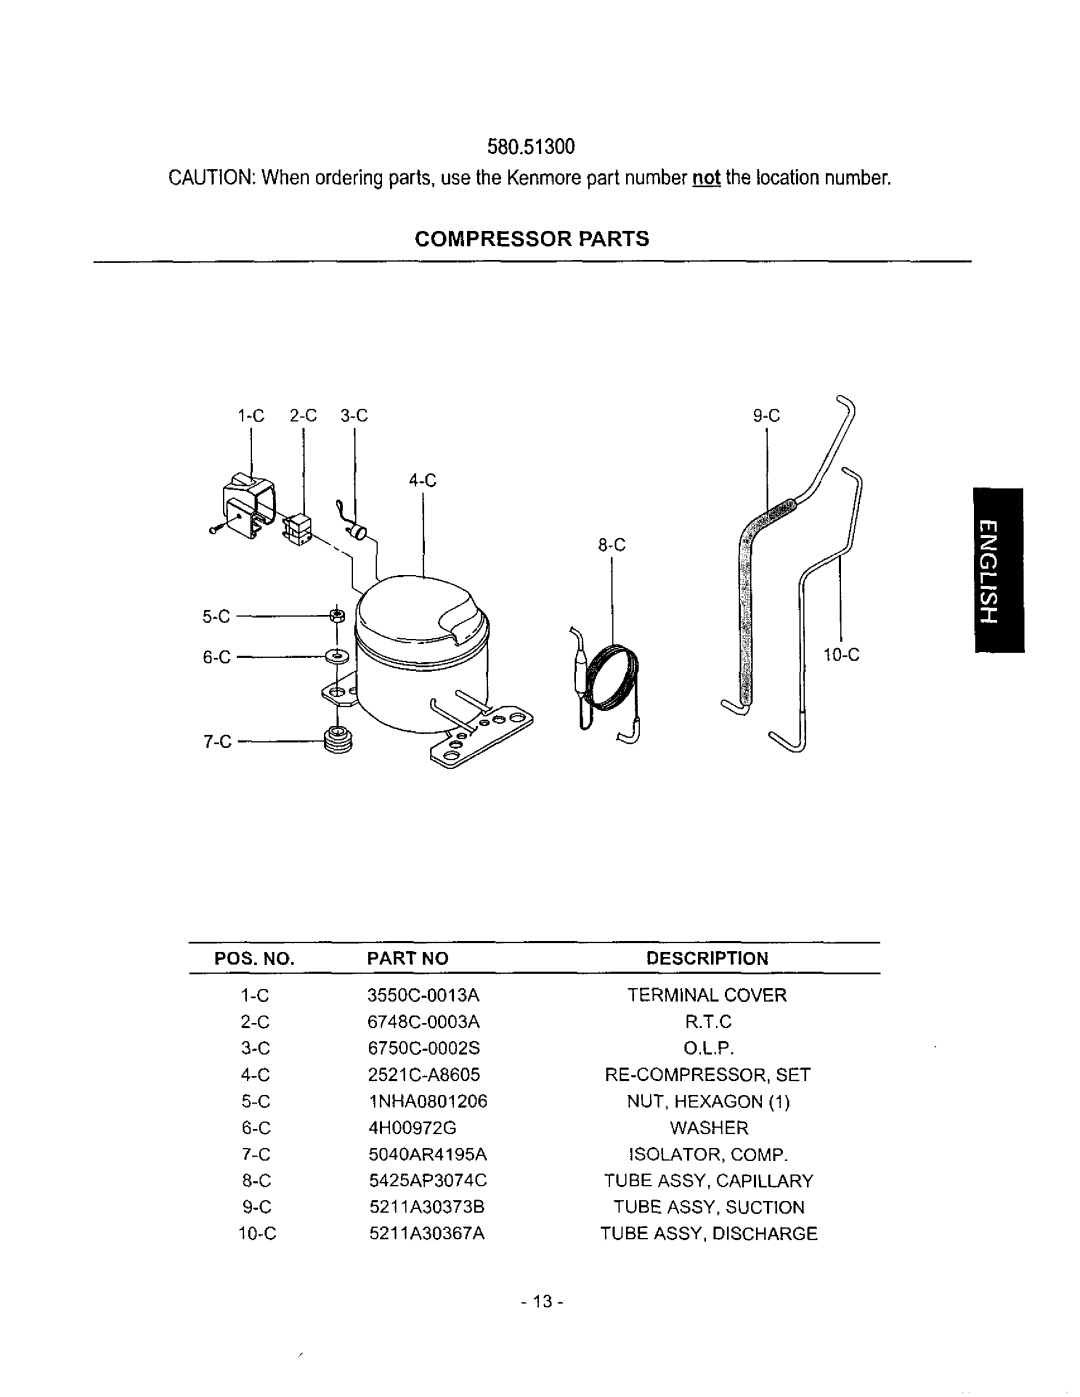 Kenmore owner manual 580.51300, Compressor Parts, Pos. No, Description 